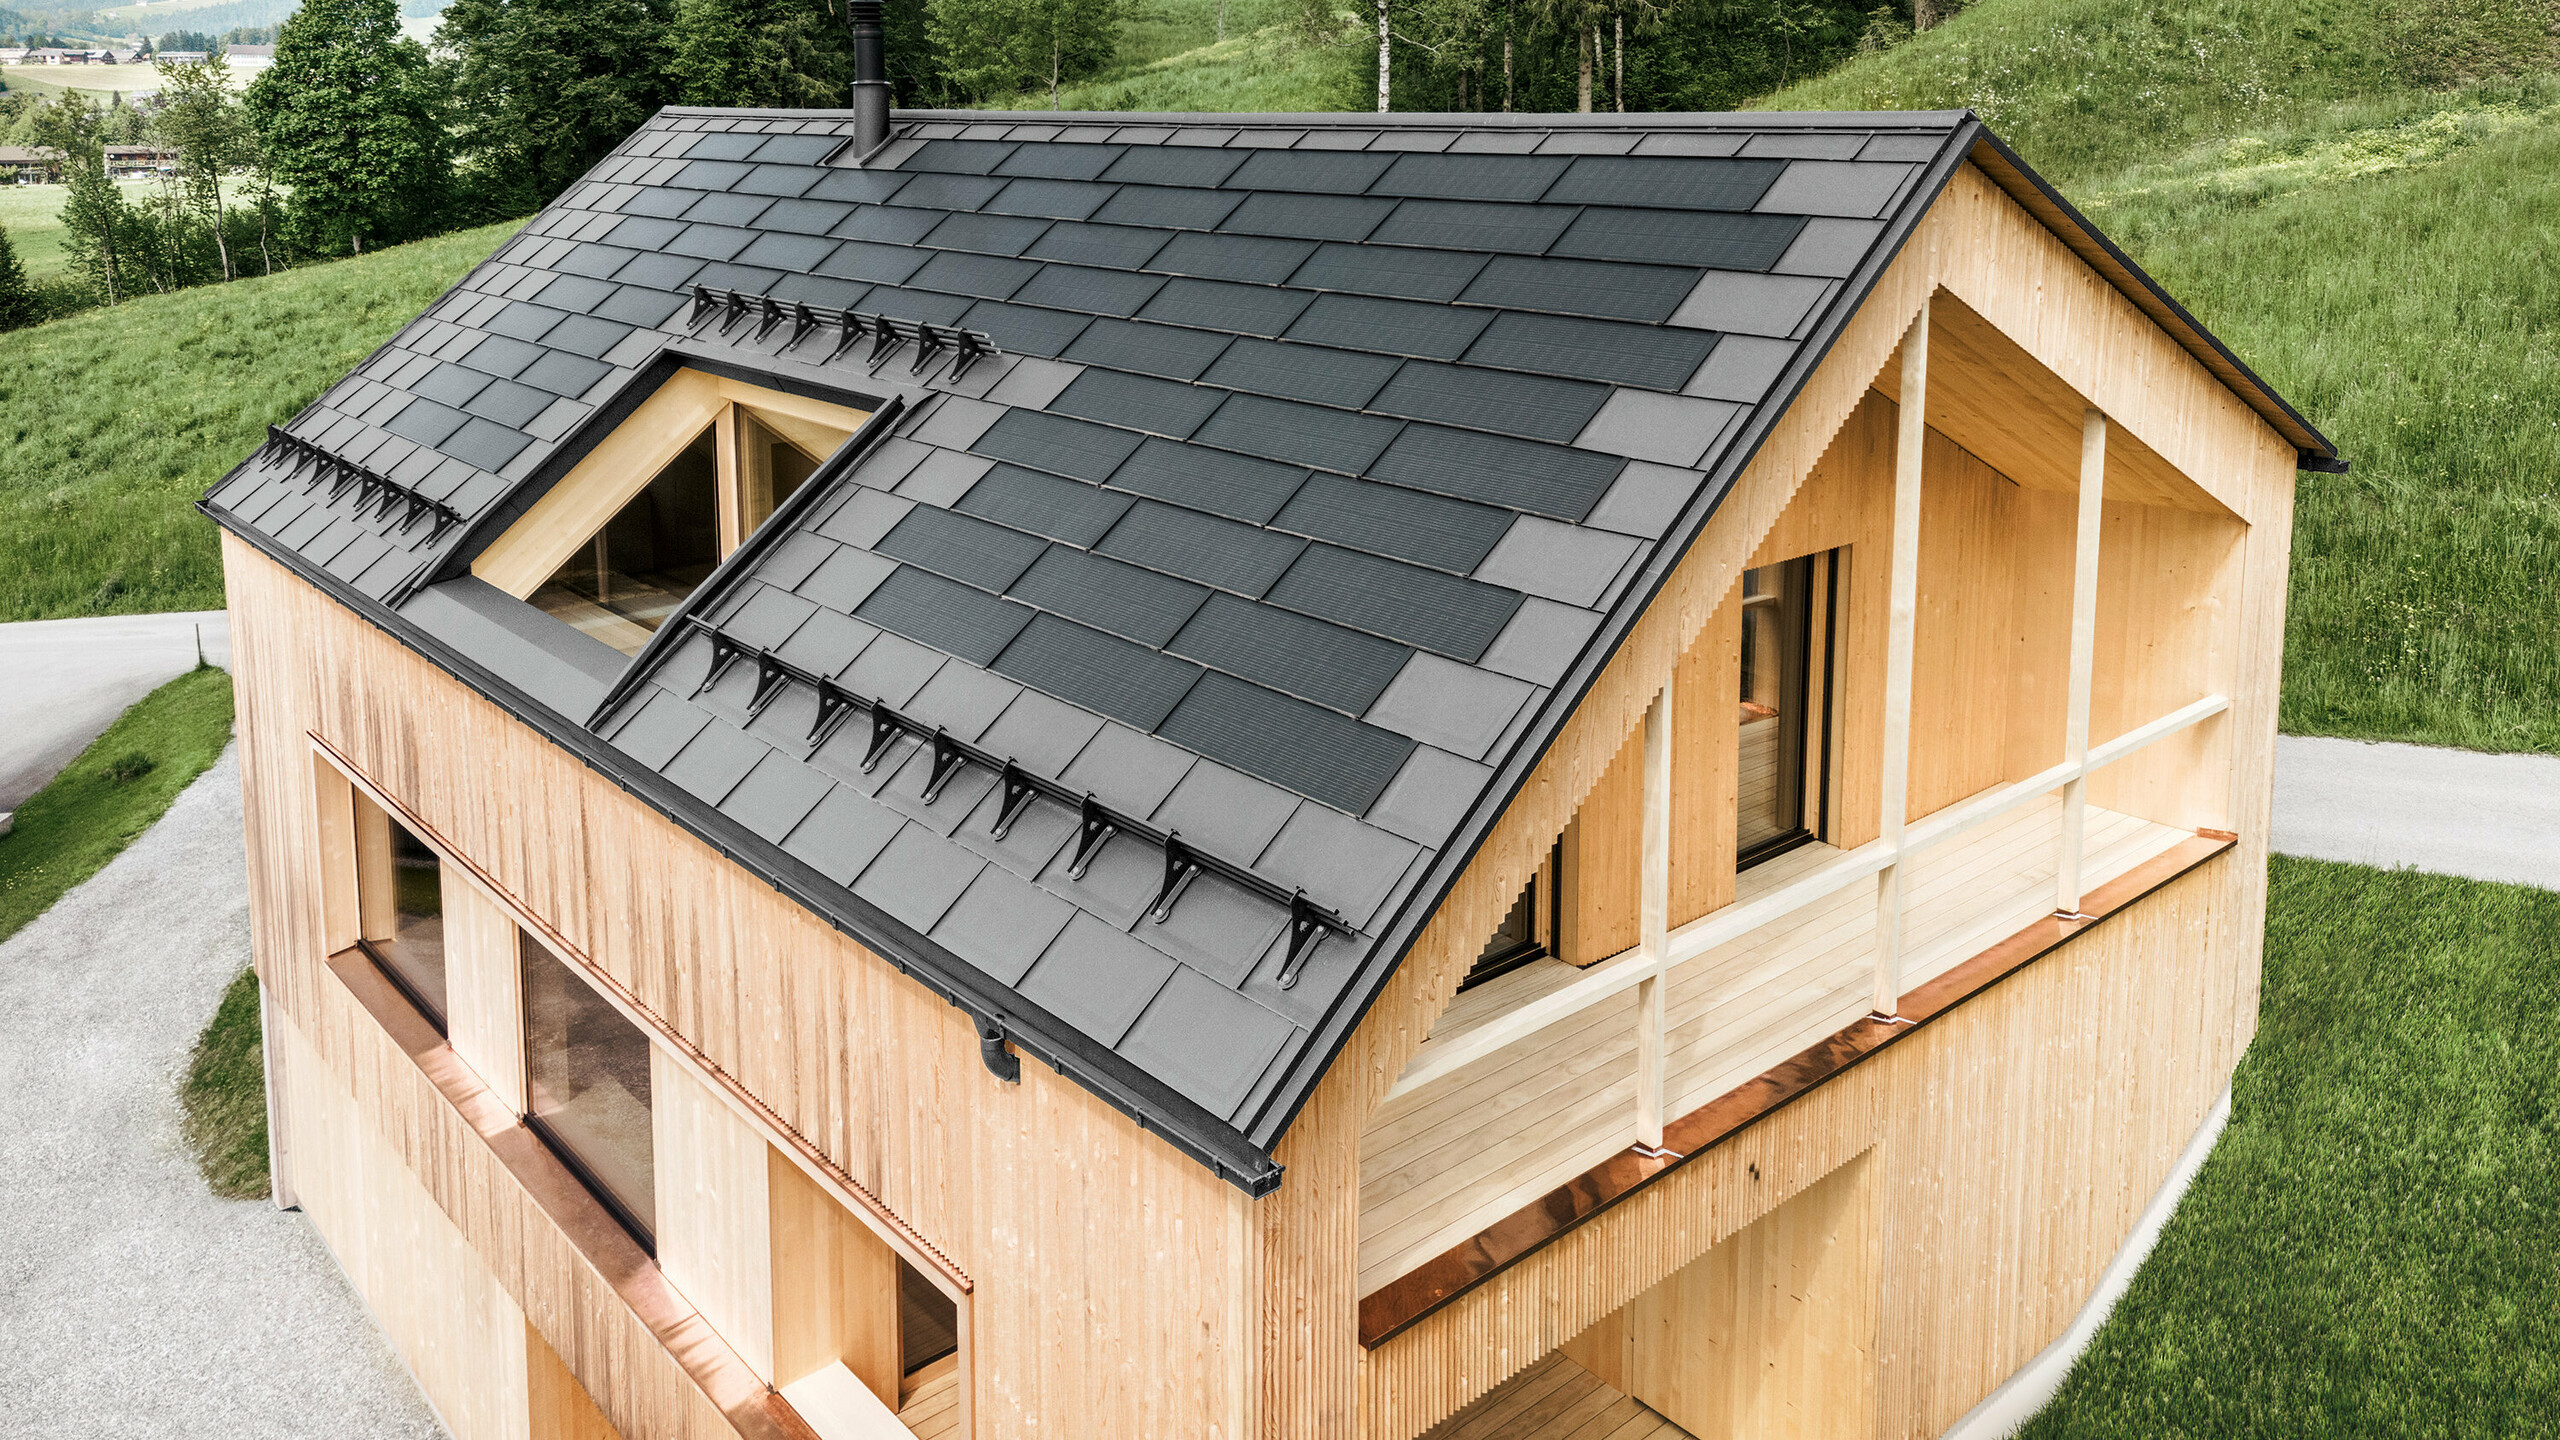 Maison individuelle dans la localité autrichienne d'Egg avec le panneau solaire de toiture PREFA et le panneau de toiture R.16 en gris clair, combinés à une façade en bois